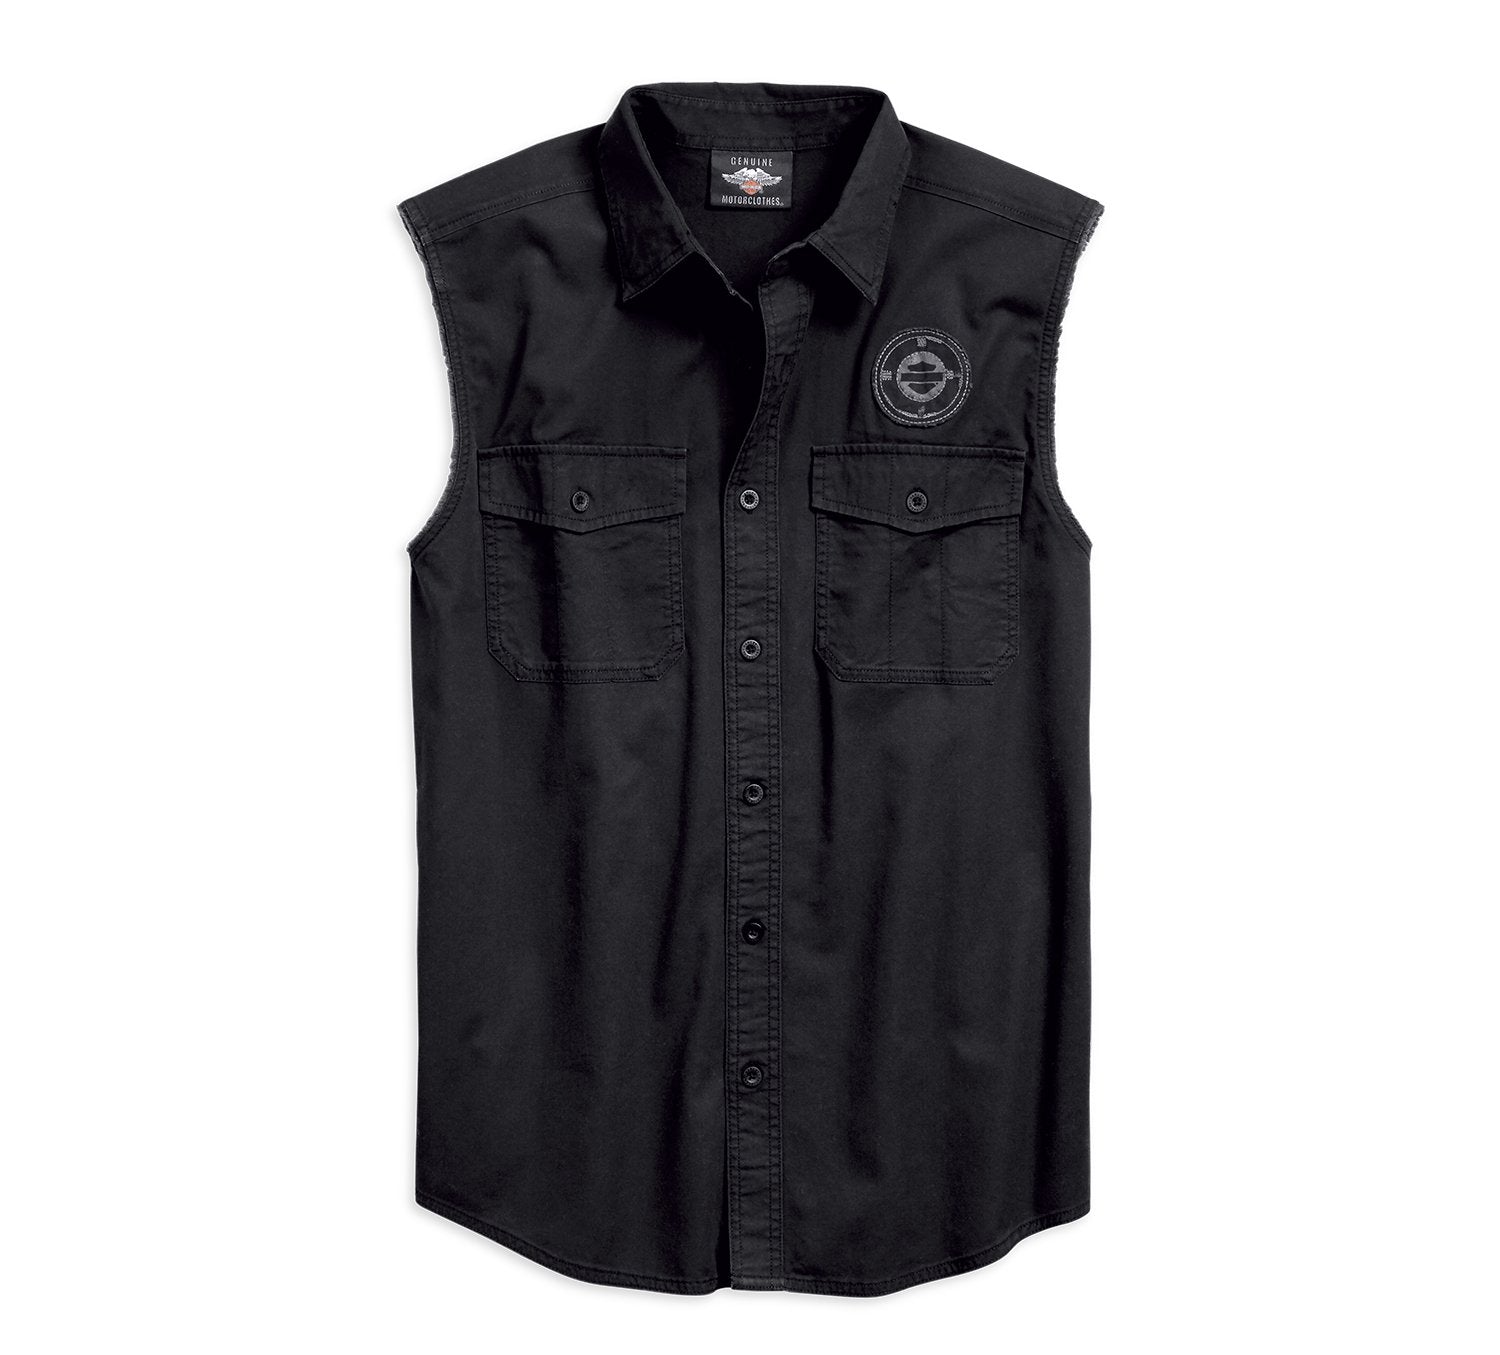 Harley-Davidson Men's Packed B&S Chest Pocket Short Sleeve T-Shirt - Black